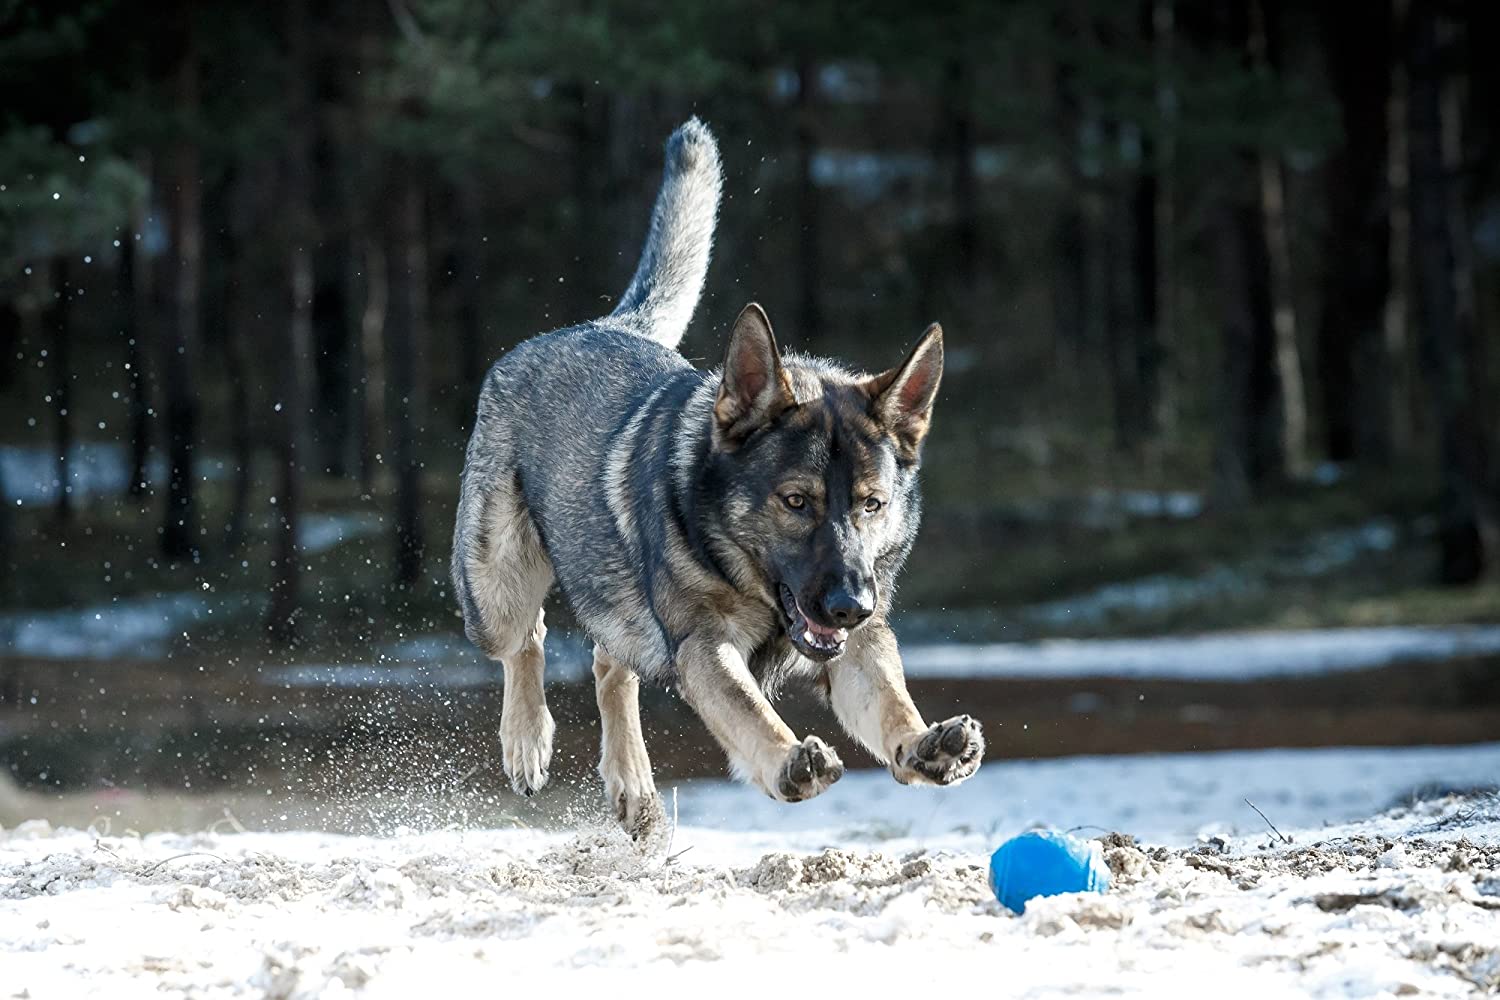  PlayfulSpirit Pelota de Rugby de Recompensas para Cachorros y Perros: Dispensador de Comida, Increíble Destructor del Aburrimiento de Mascota y Divertido Juguete de Entrenamiento Básico para Cachorros 